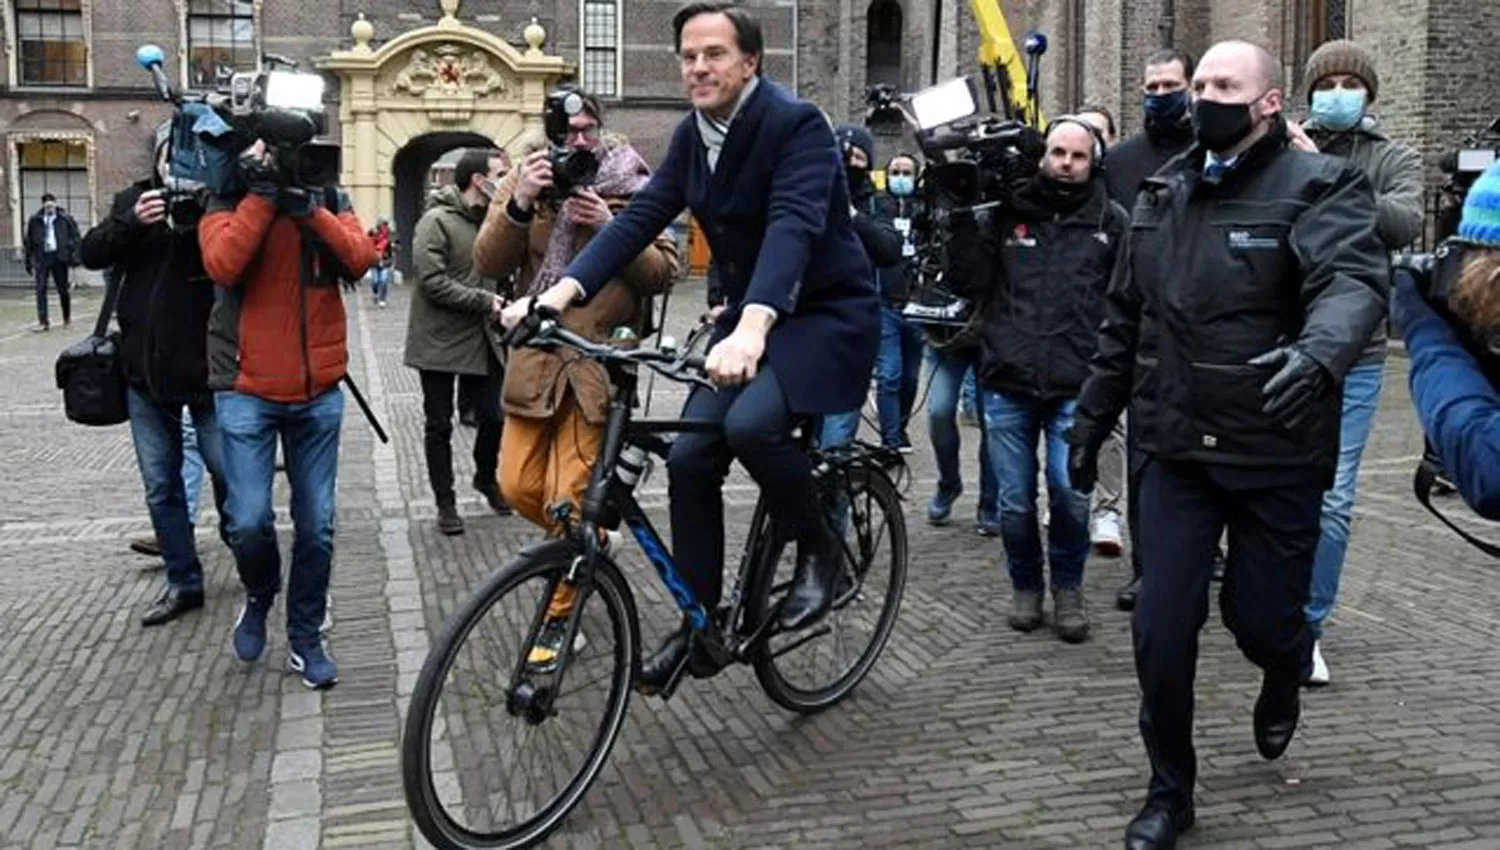 SE FUERON TODOS. El ex primer ministro Rutte le entregó la renuncia al rey Guillermo.